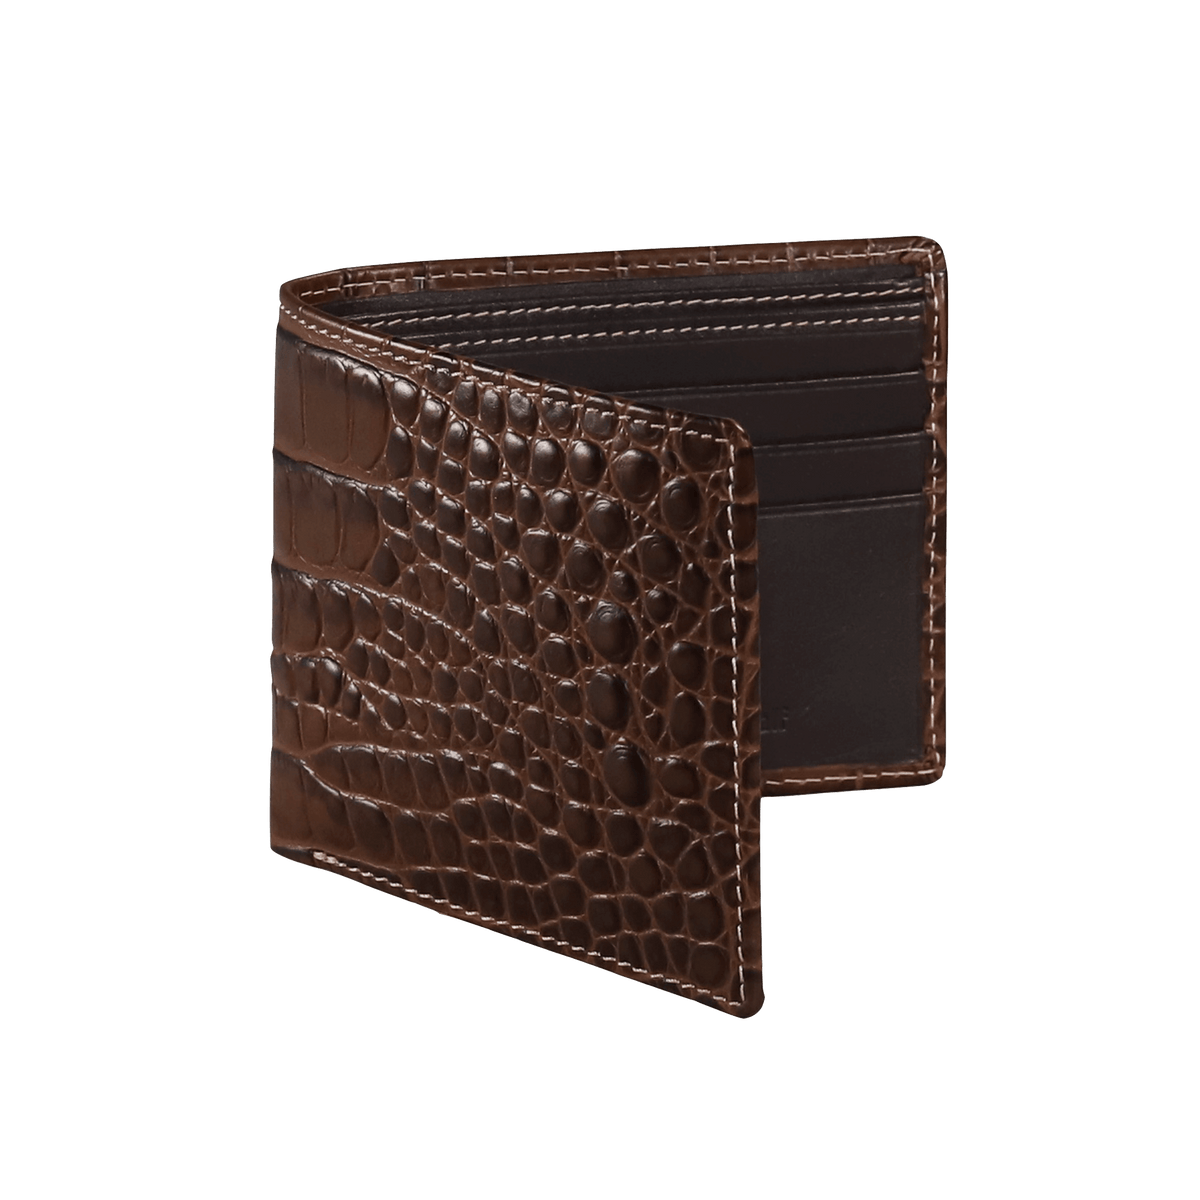 alligator credit card holder wallet(starting price)